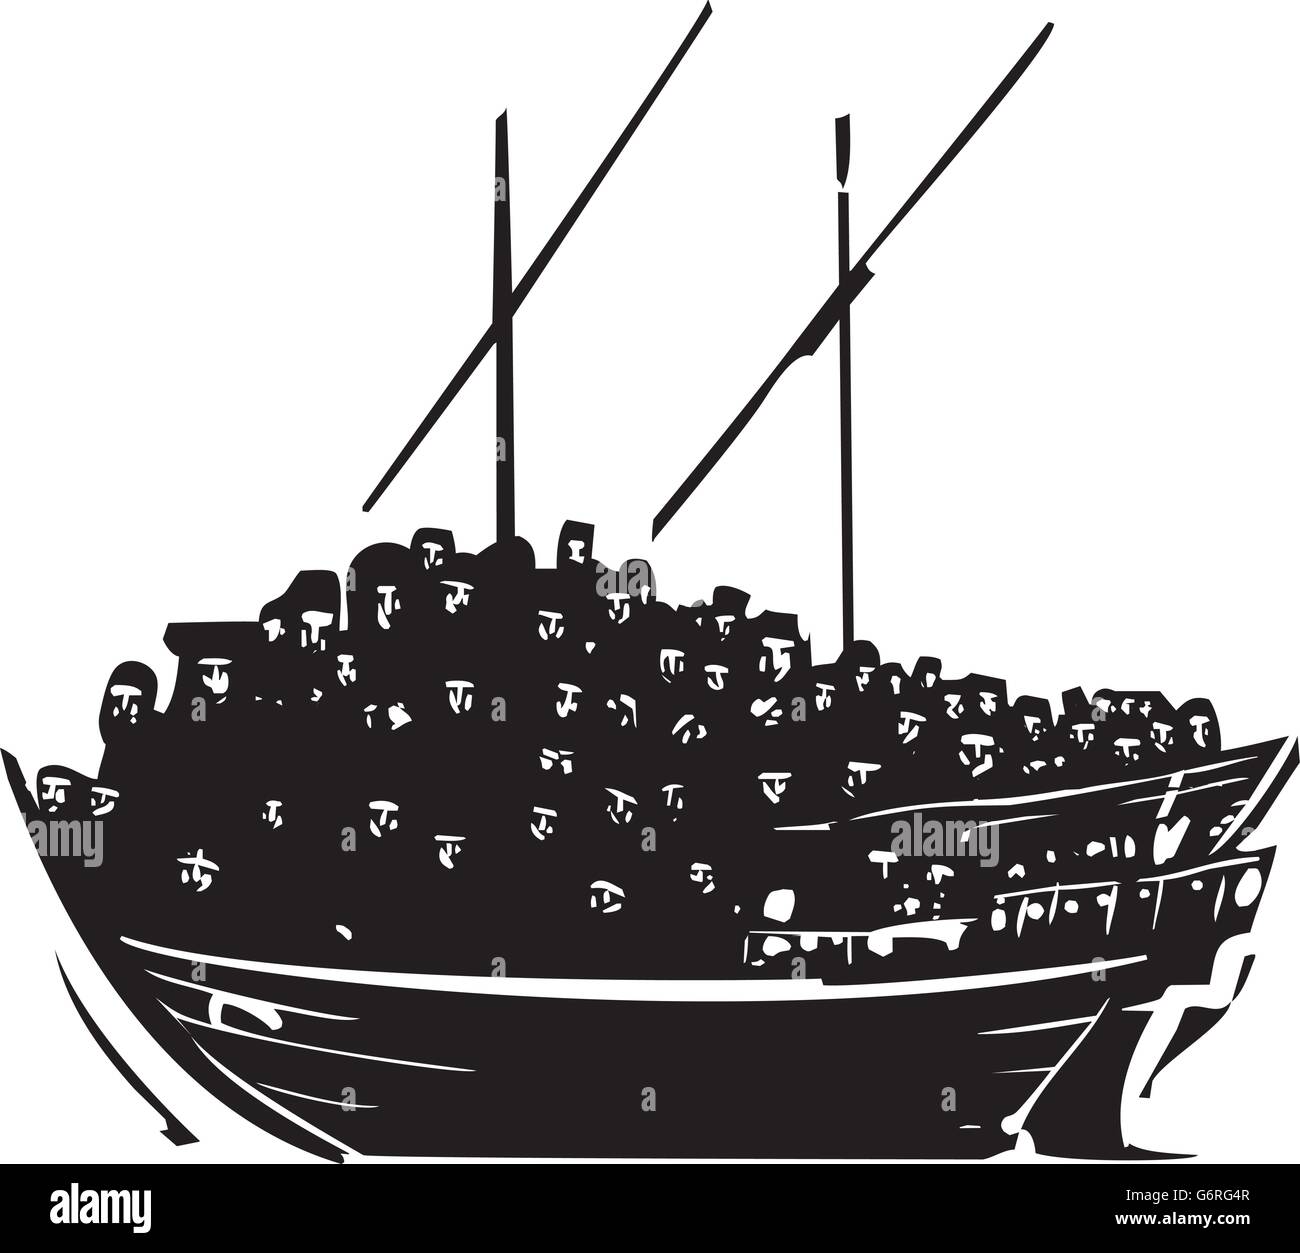 Holzschnitt-Stil Bild einer Menschenmenge von Flüchtlingen ein einem traditionellen arabischen Schiff eine Dhau genannt Stock Vektor